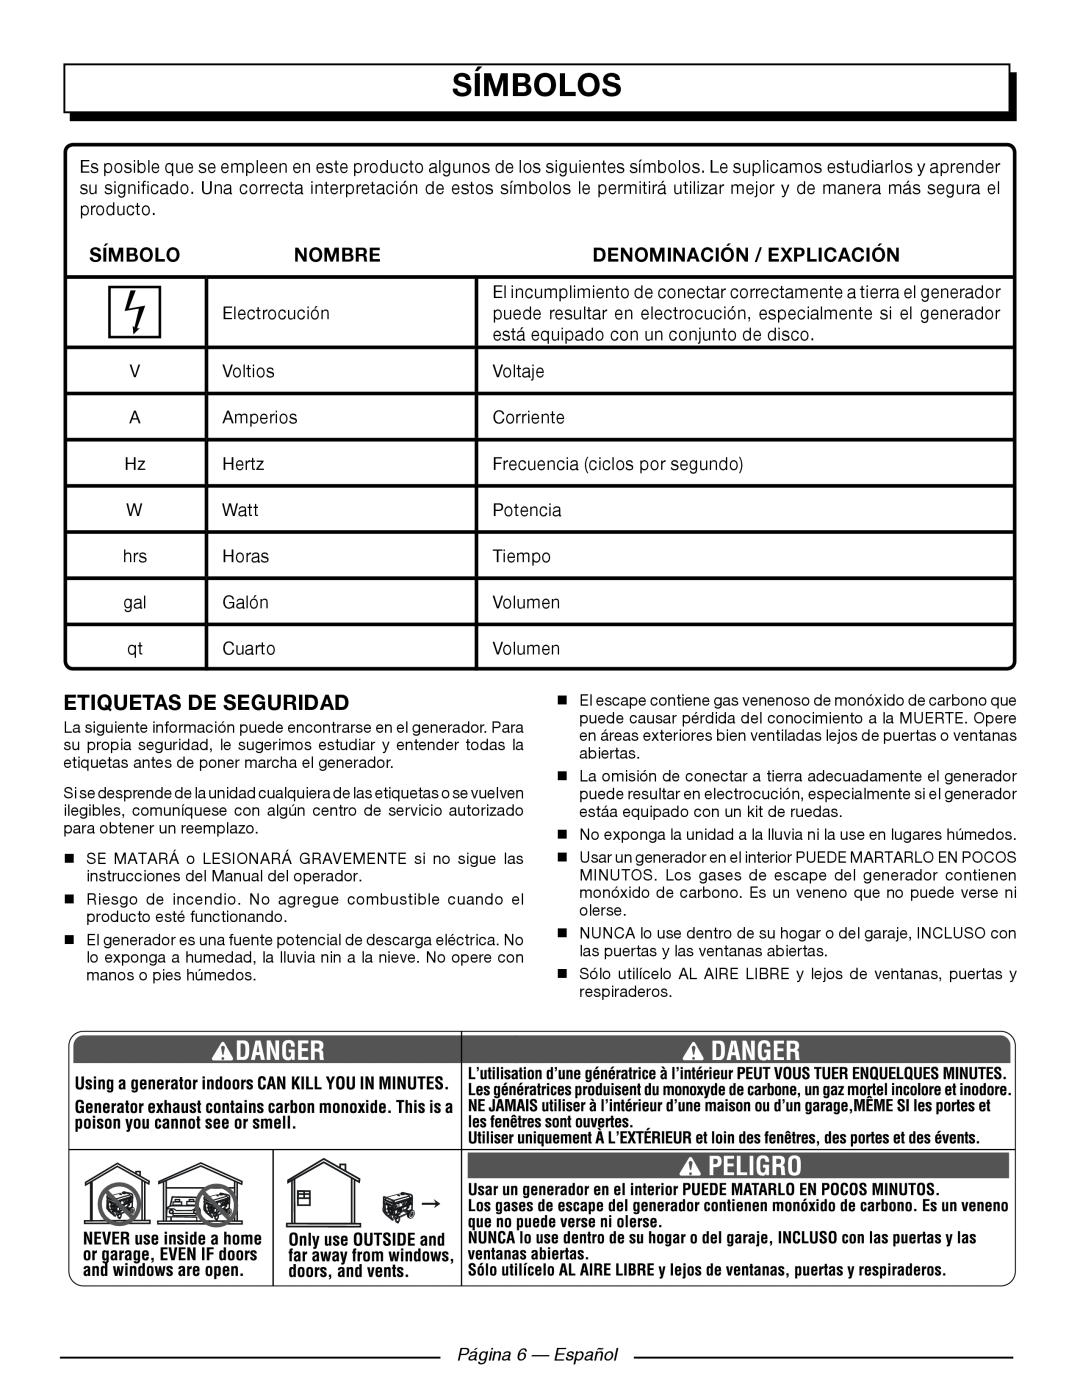 Homelite UT902250 Etiquetas De Seguridad, Página 6 — Español, Símbolos, Nombre, Denominación / Explicación 